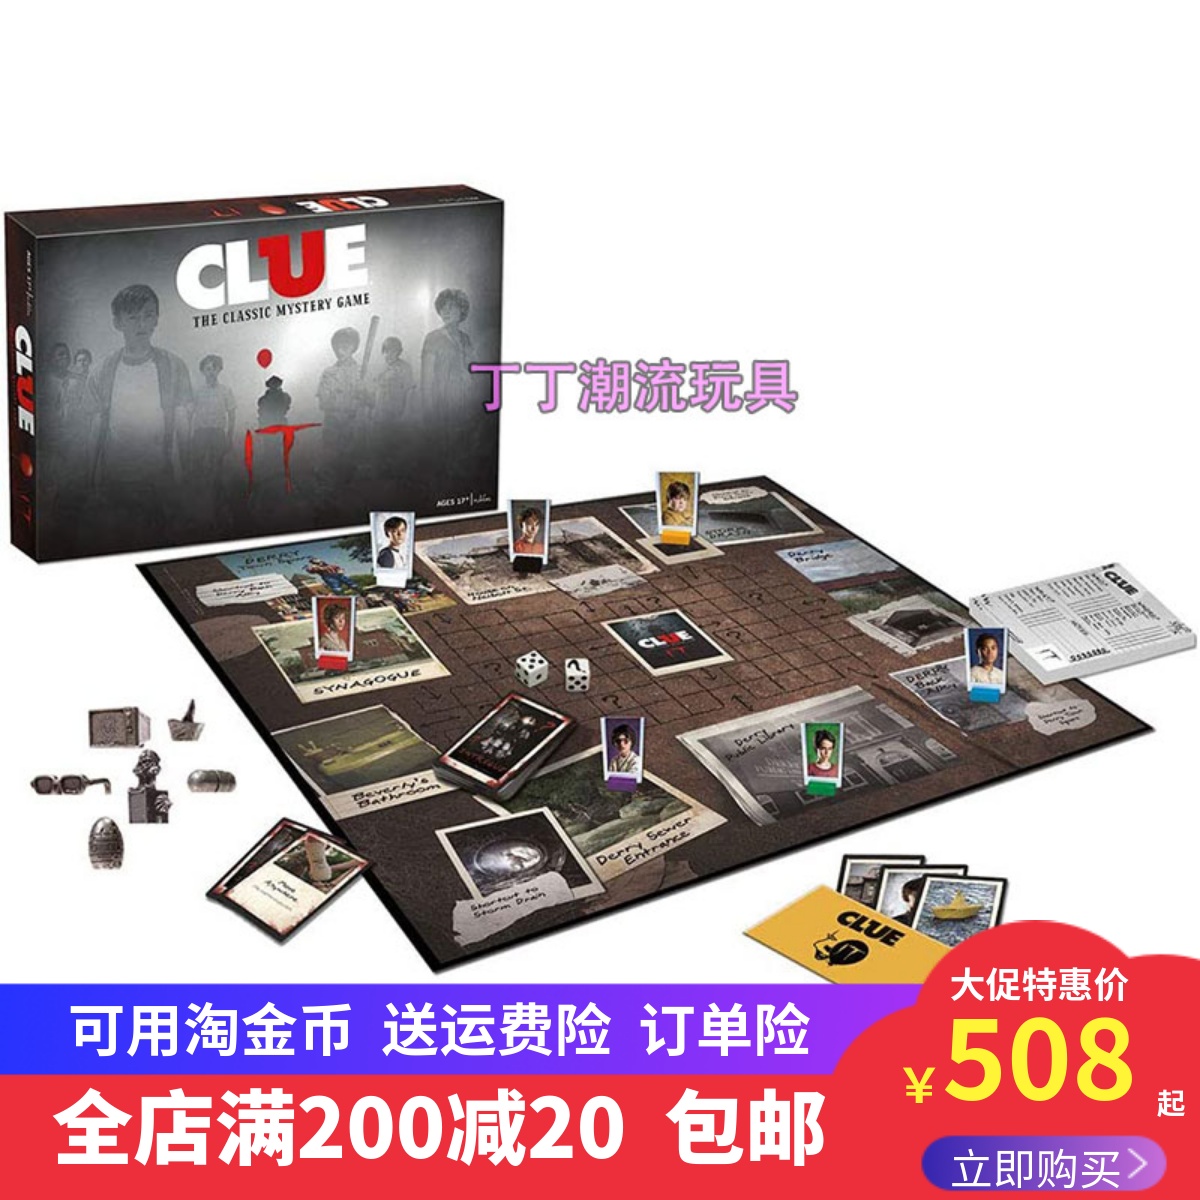 恐怖小丑电影经典谜题聚会家庭桌面游戏正品Clue IT Mystery Game